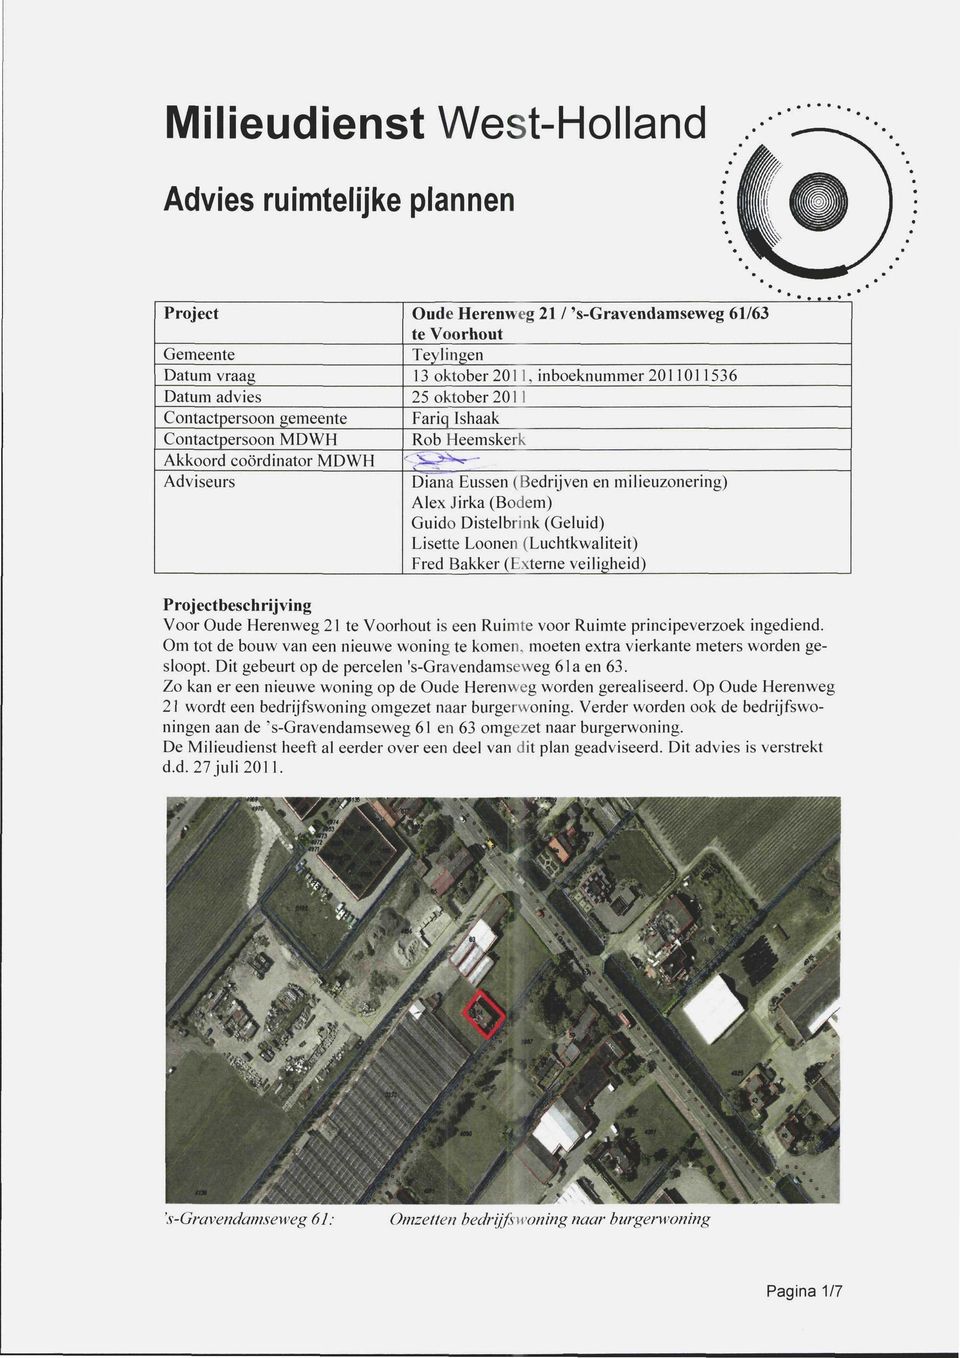 (Luchtkwaliteit) Fred Bakker (Externe veiligheid) Projectbeschrijving Voor Oude Herenweg 21 te Voorhout is een Ruimte voor Ruimte principeverzoek ingediend.